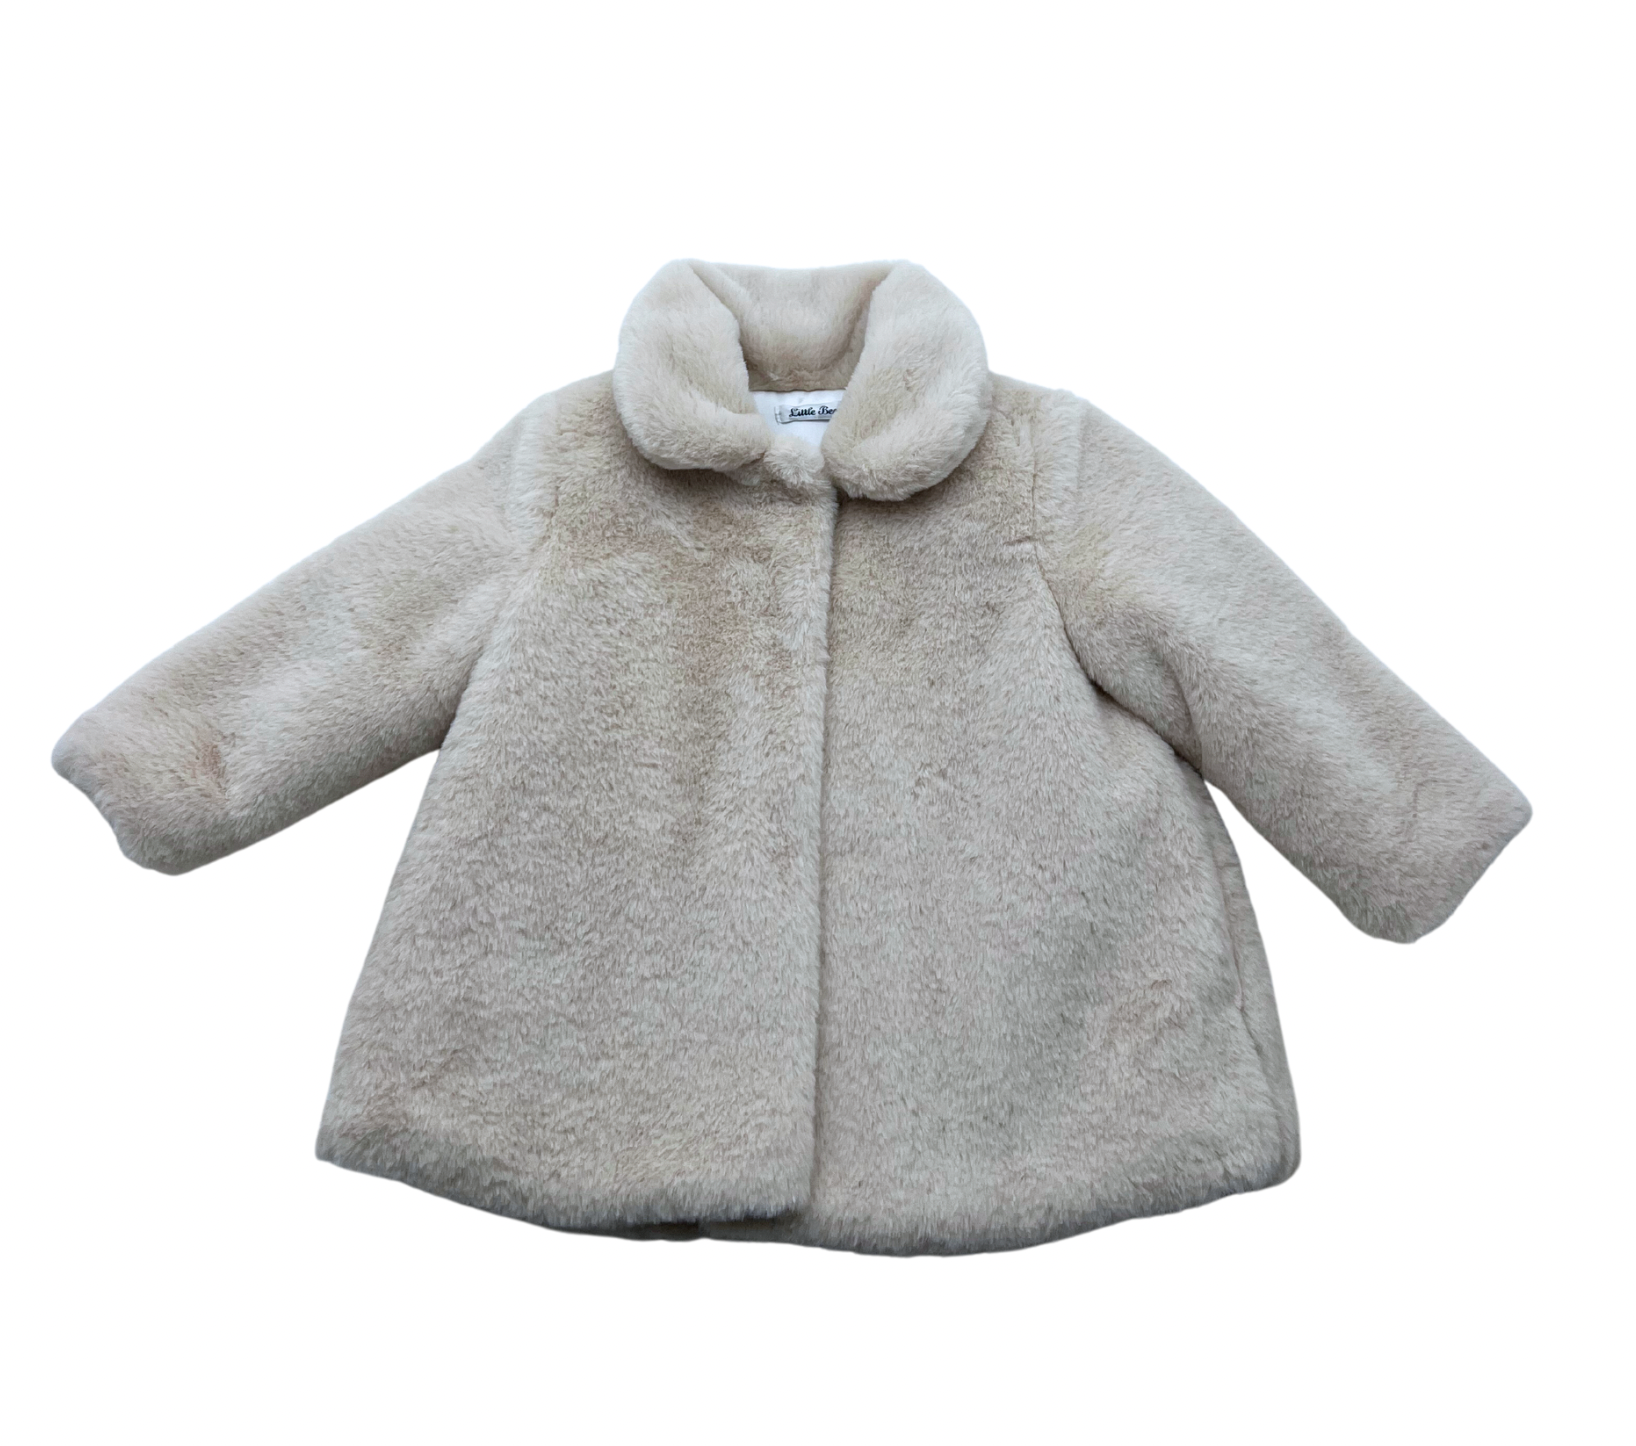 Little Bear - Ultra soft beige faux fur coat - 18 months